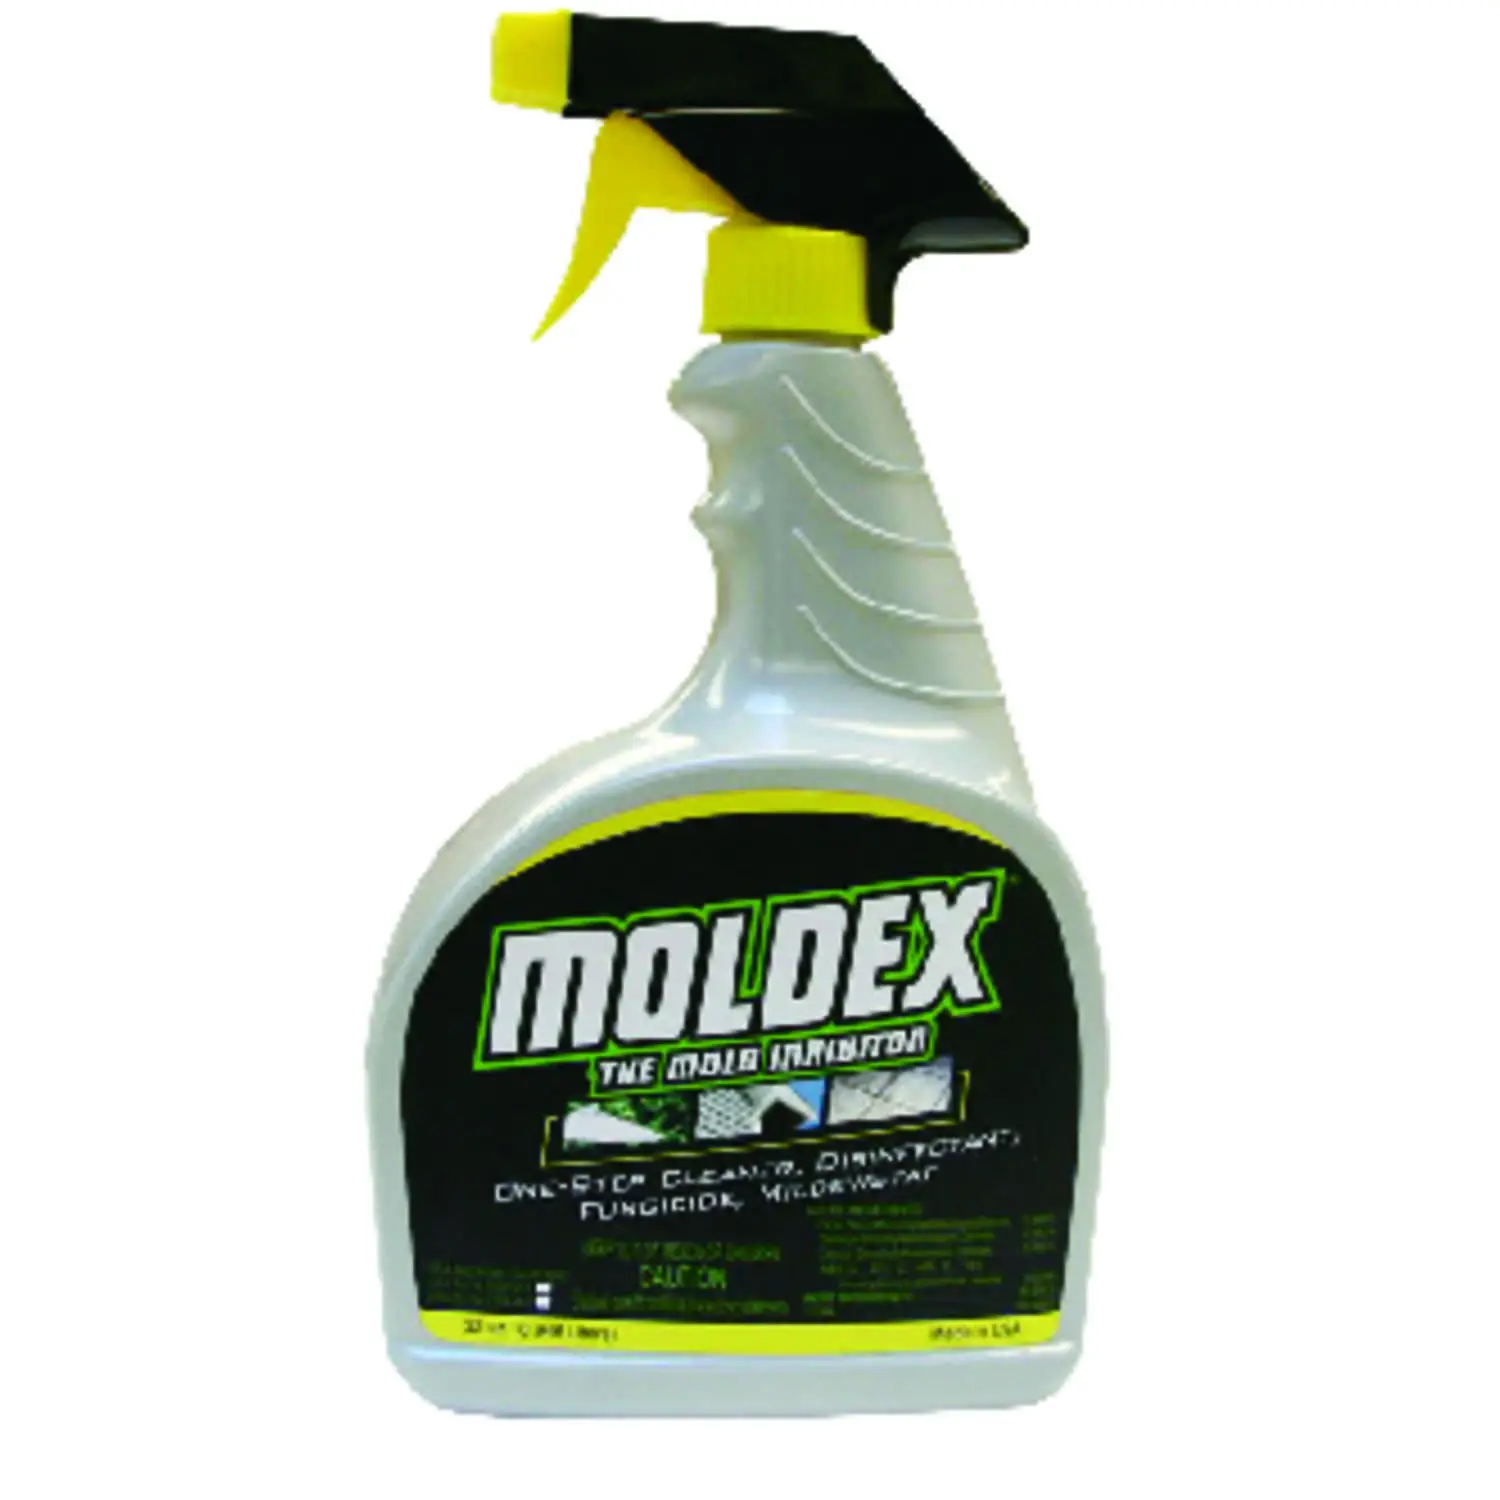 Moldex Mold Killer No Scent Disinfectant Spray 32 oz. Liquid